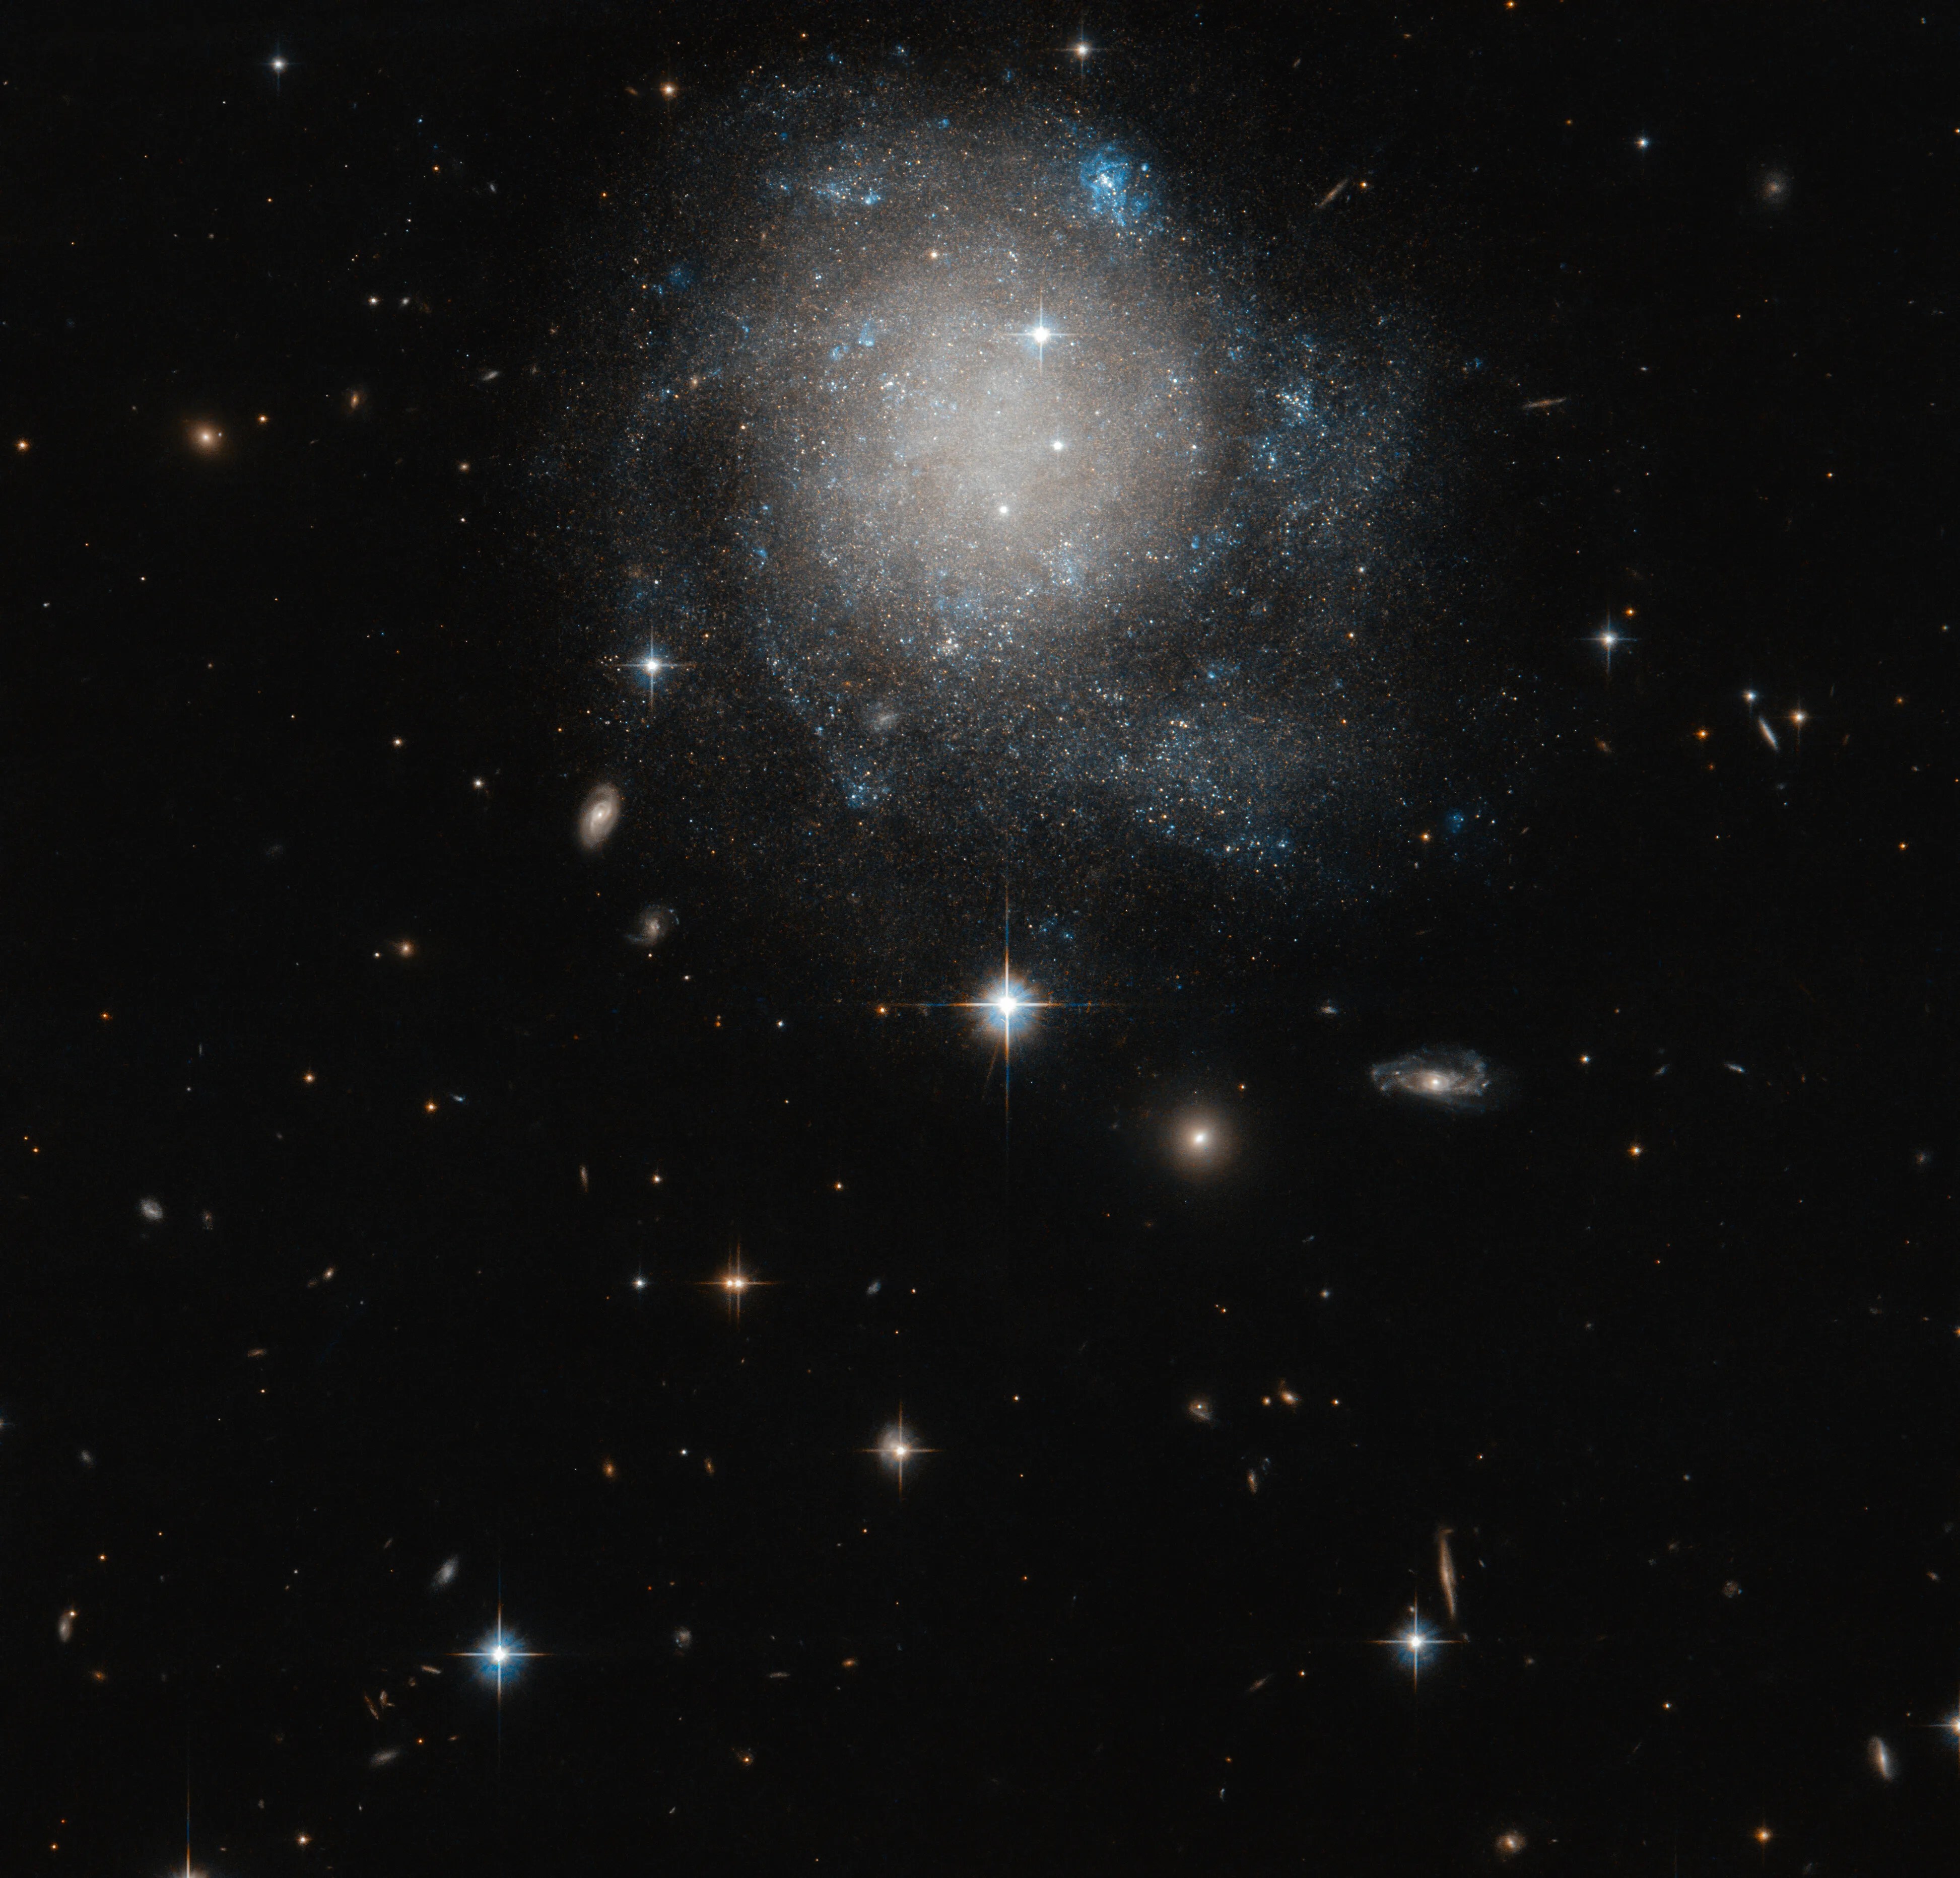 Hubble image of ugc 12588